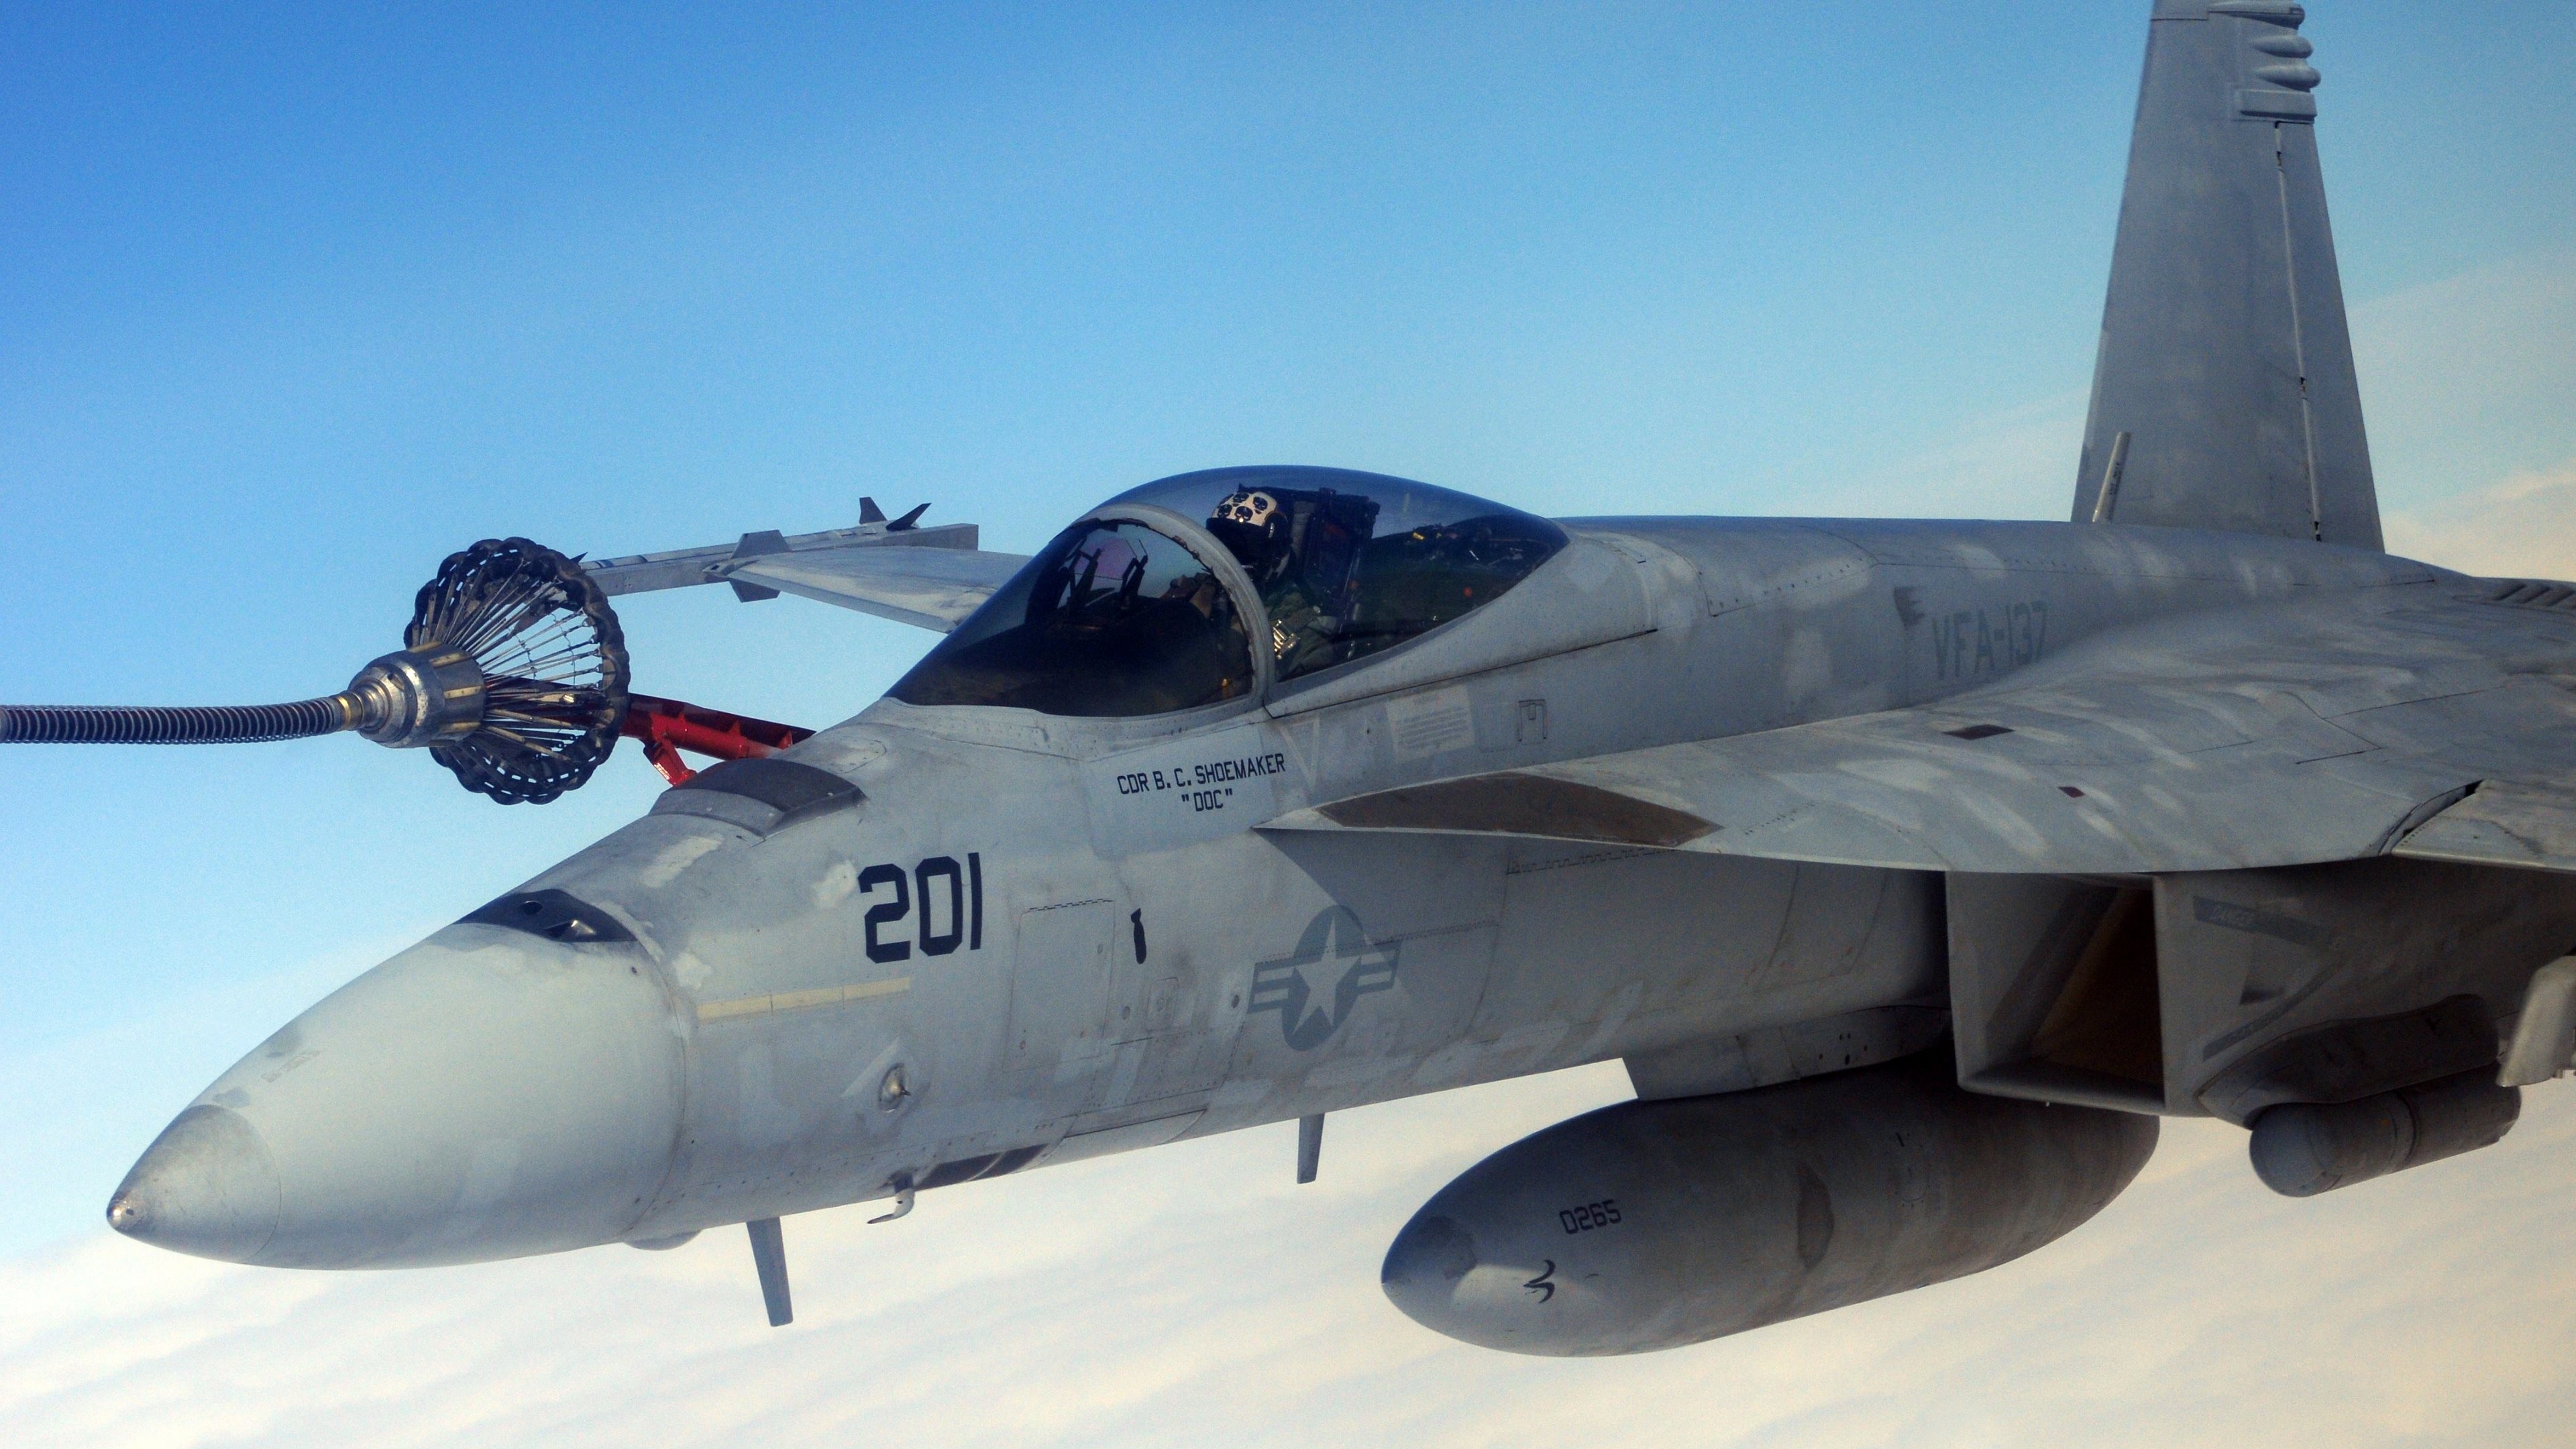 3840x2160 Wallpaper: F-18 Fighter Aircraft